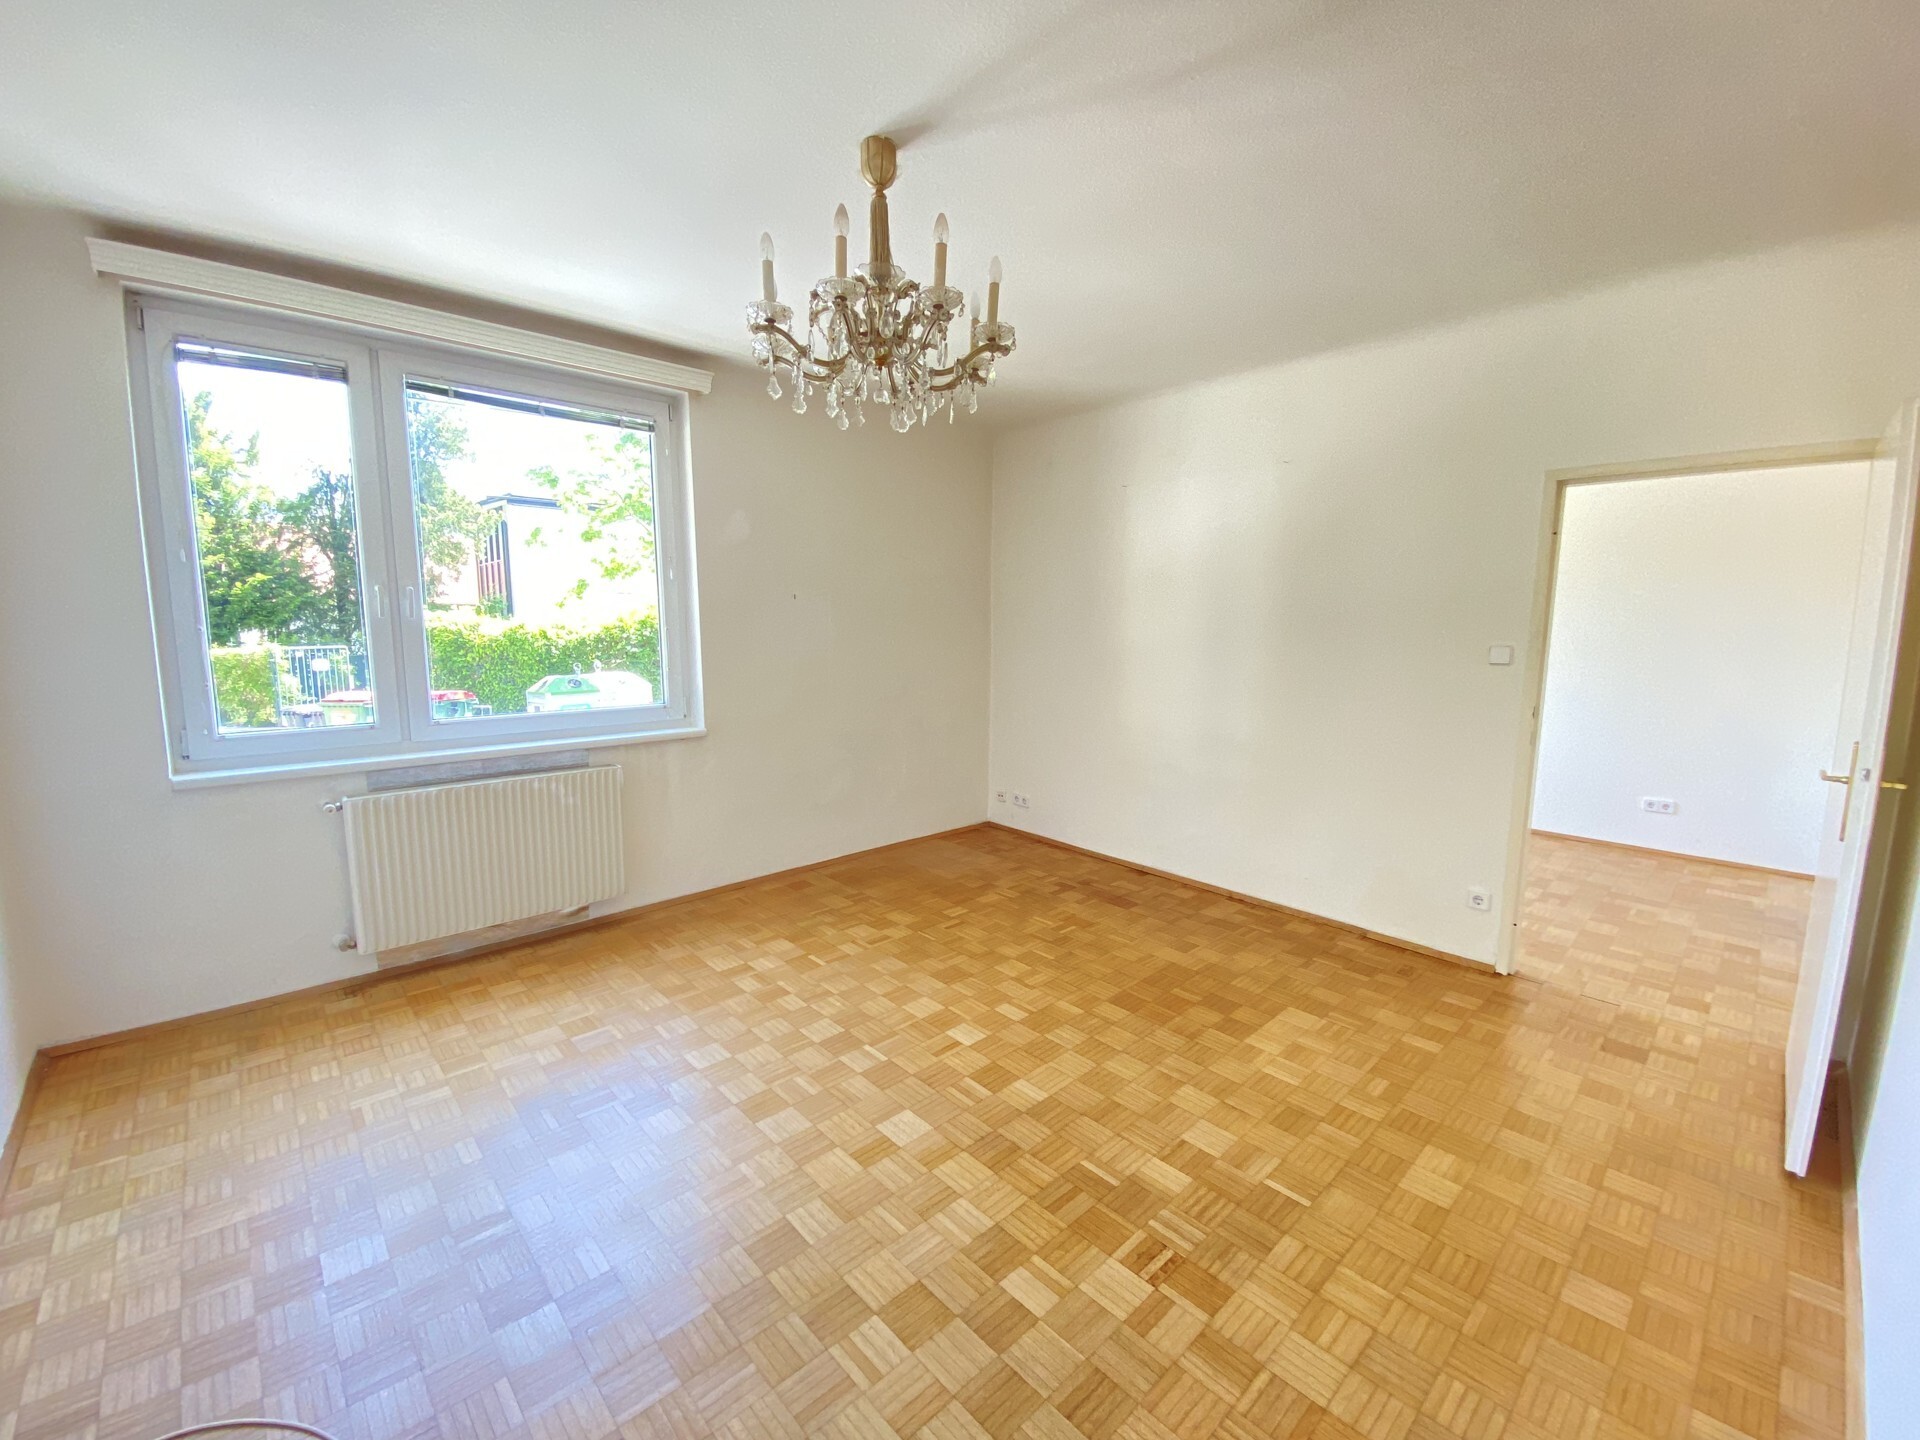 Sonnige 2-Zimmer-Wohnung mit Gestaltungspotential am Fuße des Nussbergs - zu kaufen in 1190 Wien